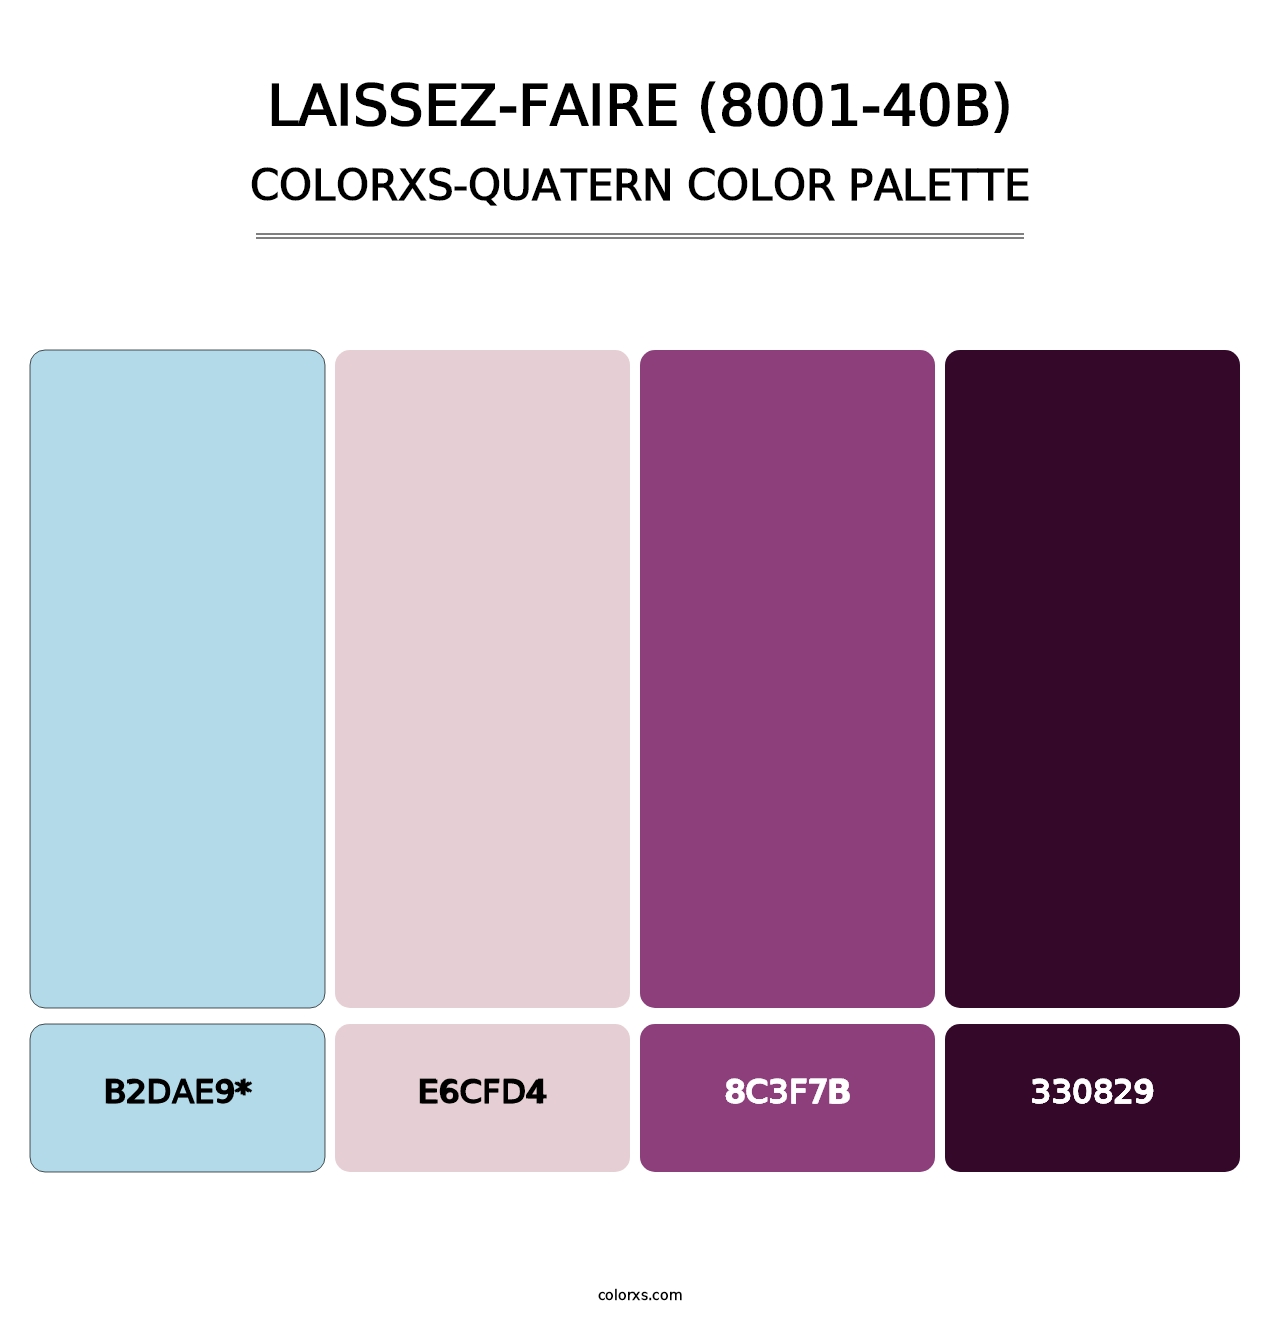 Laissez-Faire (8001-40B) - Colorxs Quatern Palette